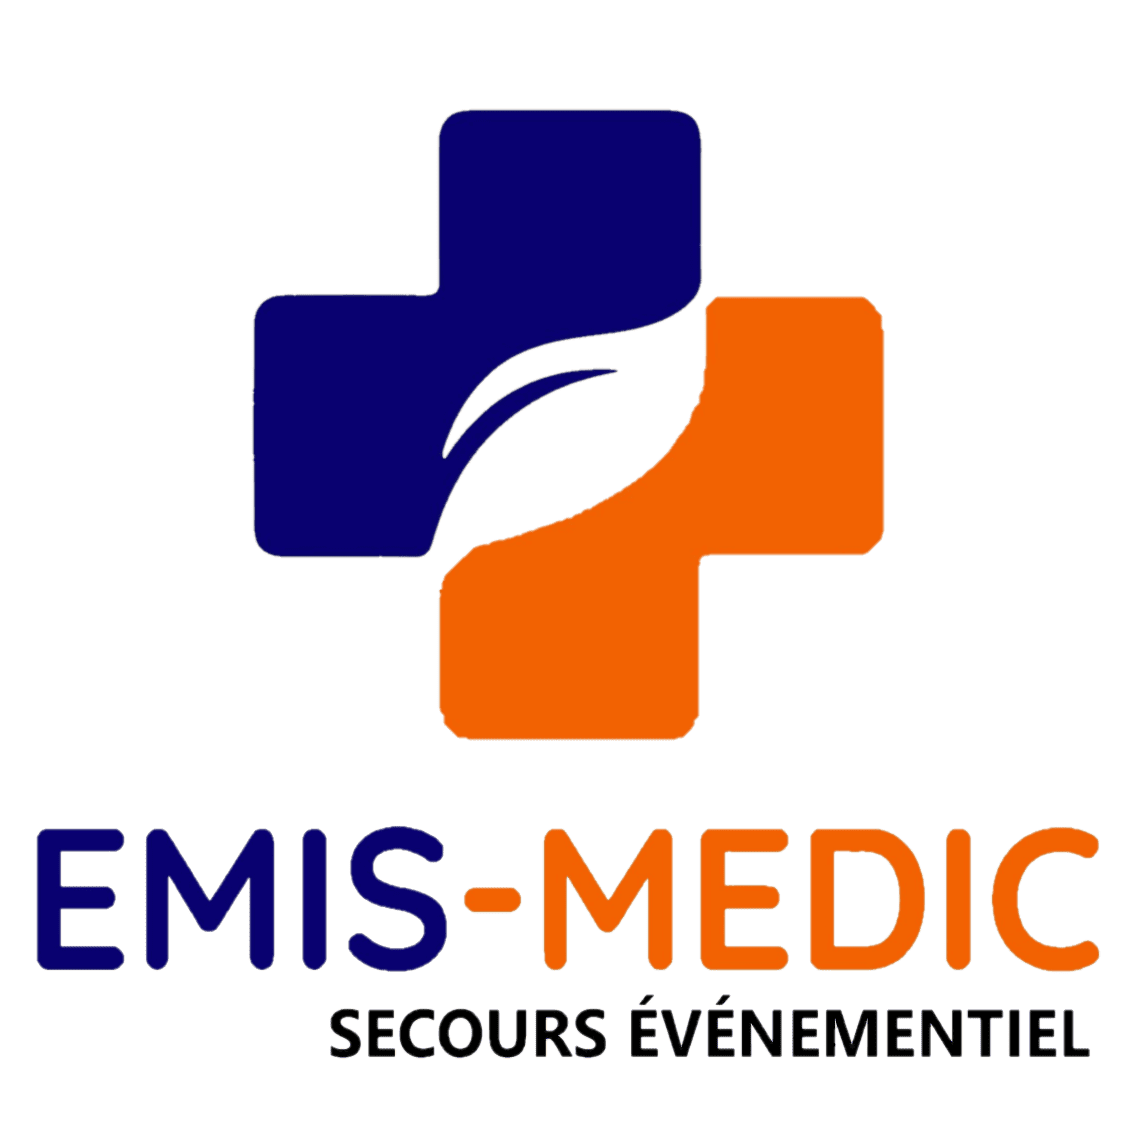 Emis-Medic secours événementiel